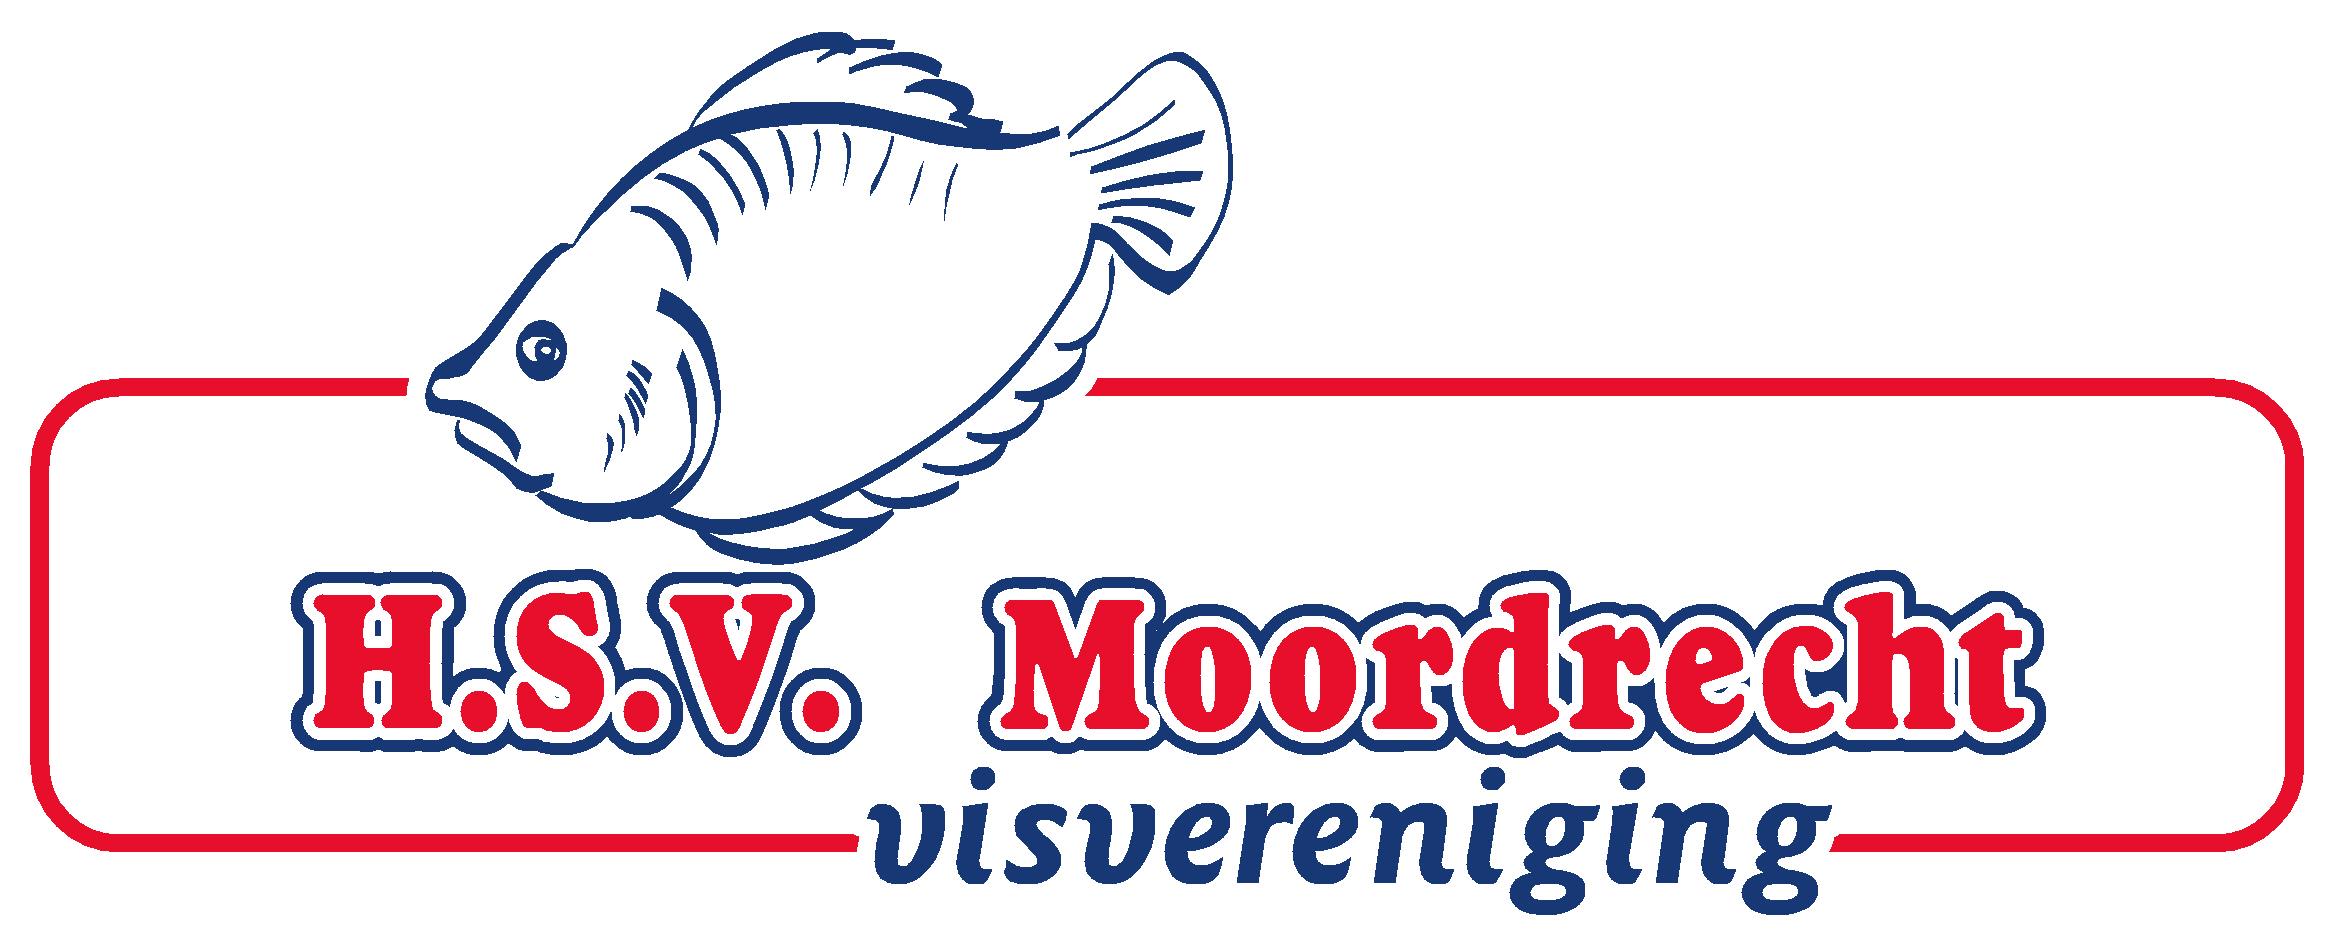 HSV Moordrecht